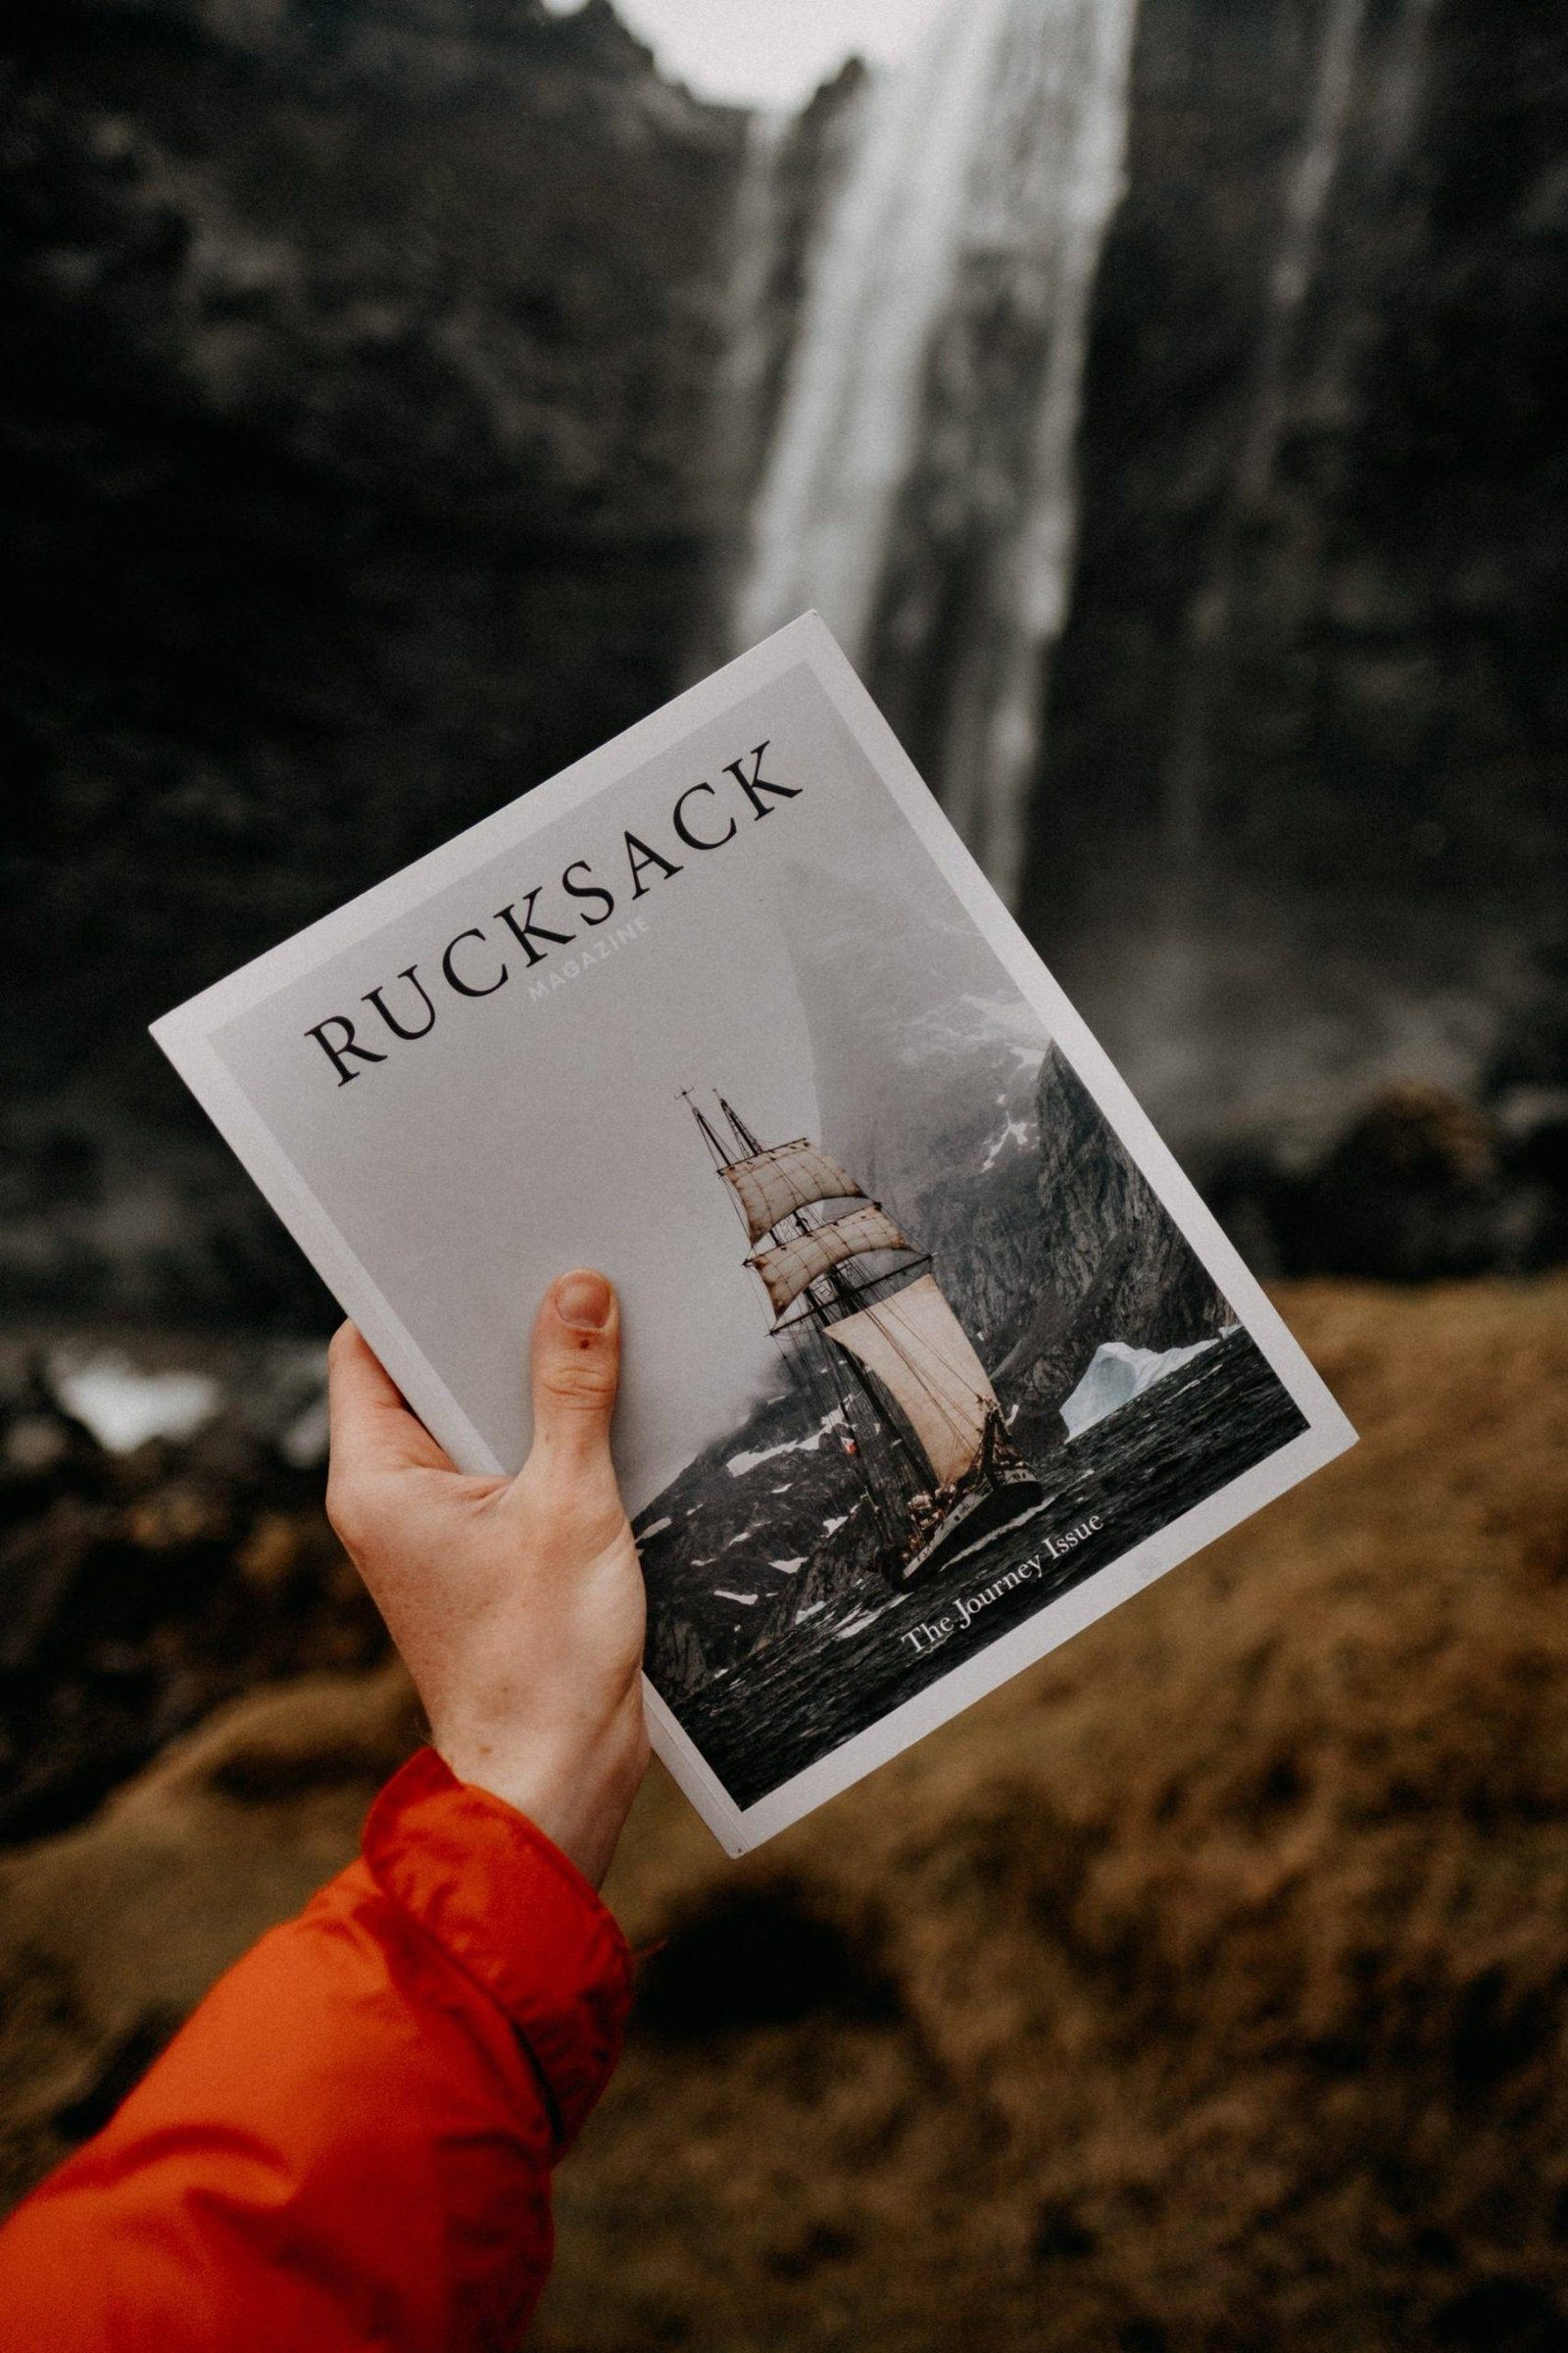 rucksack-magazine-671070-unsplash-e1562321949957.jpg